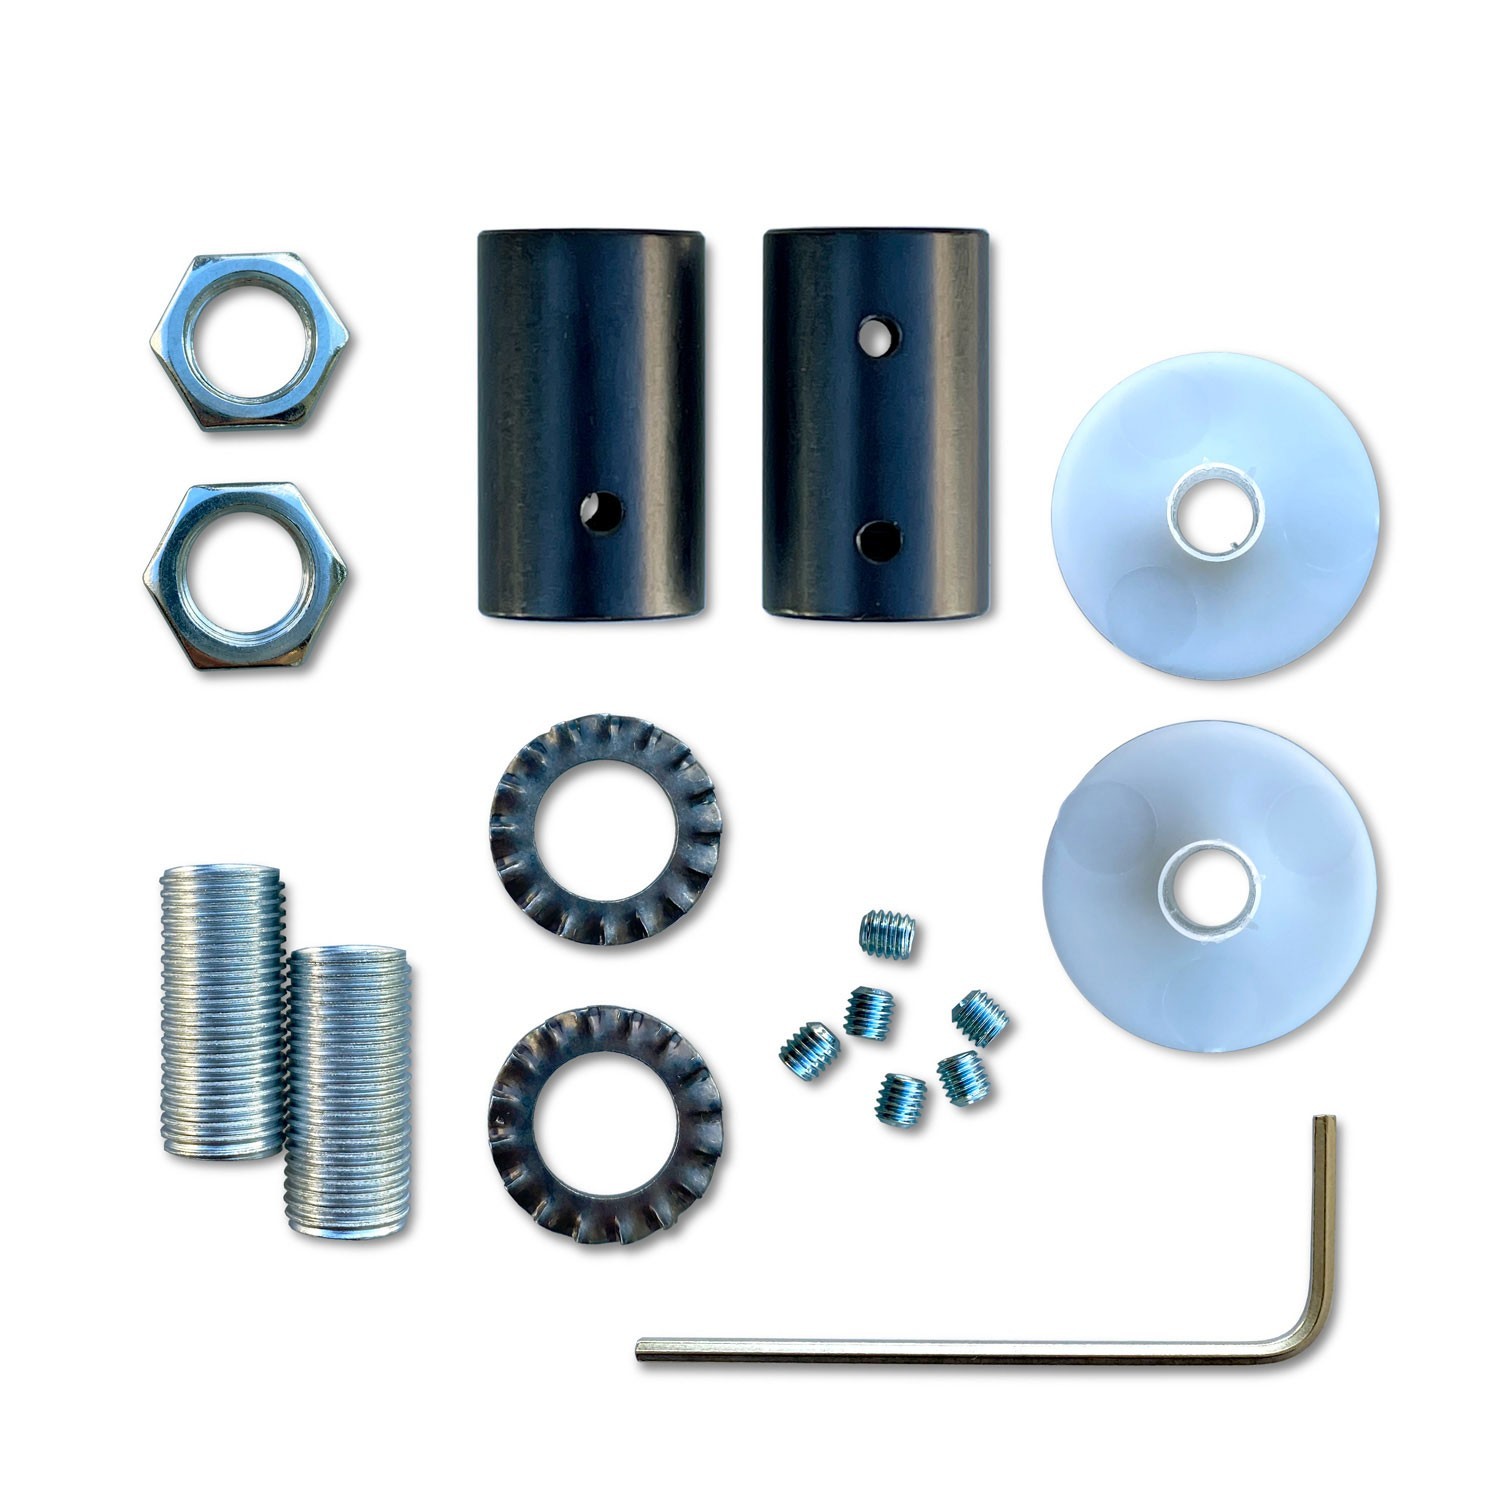 Kit Creative Flex fleksibelt rør i petroleumsblå RM78 tekstilforing med metalterminaler